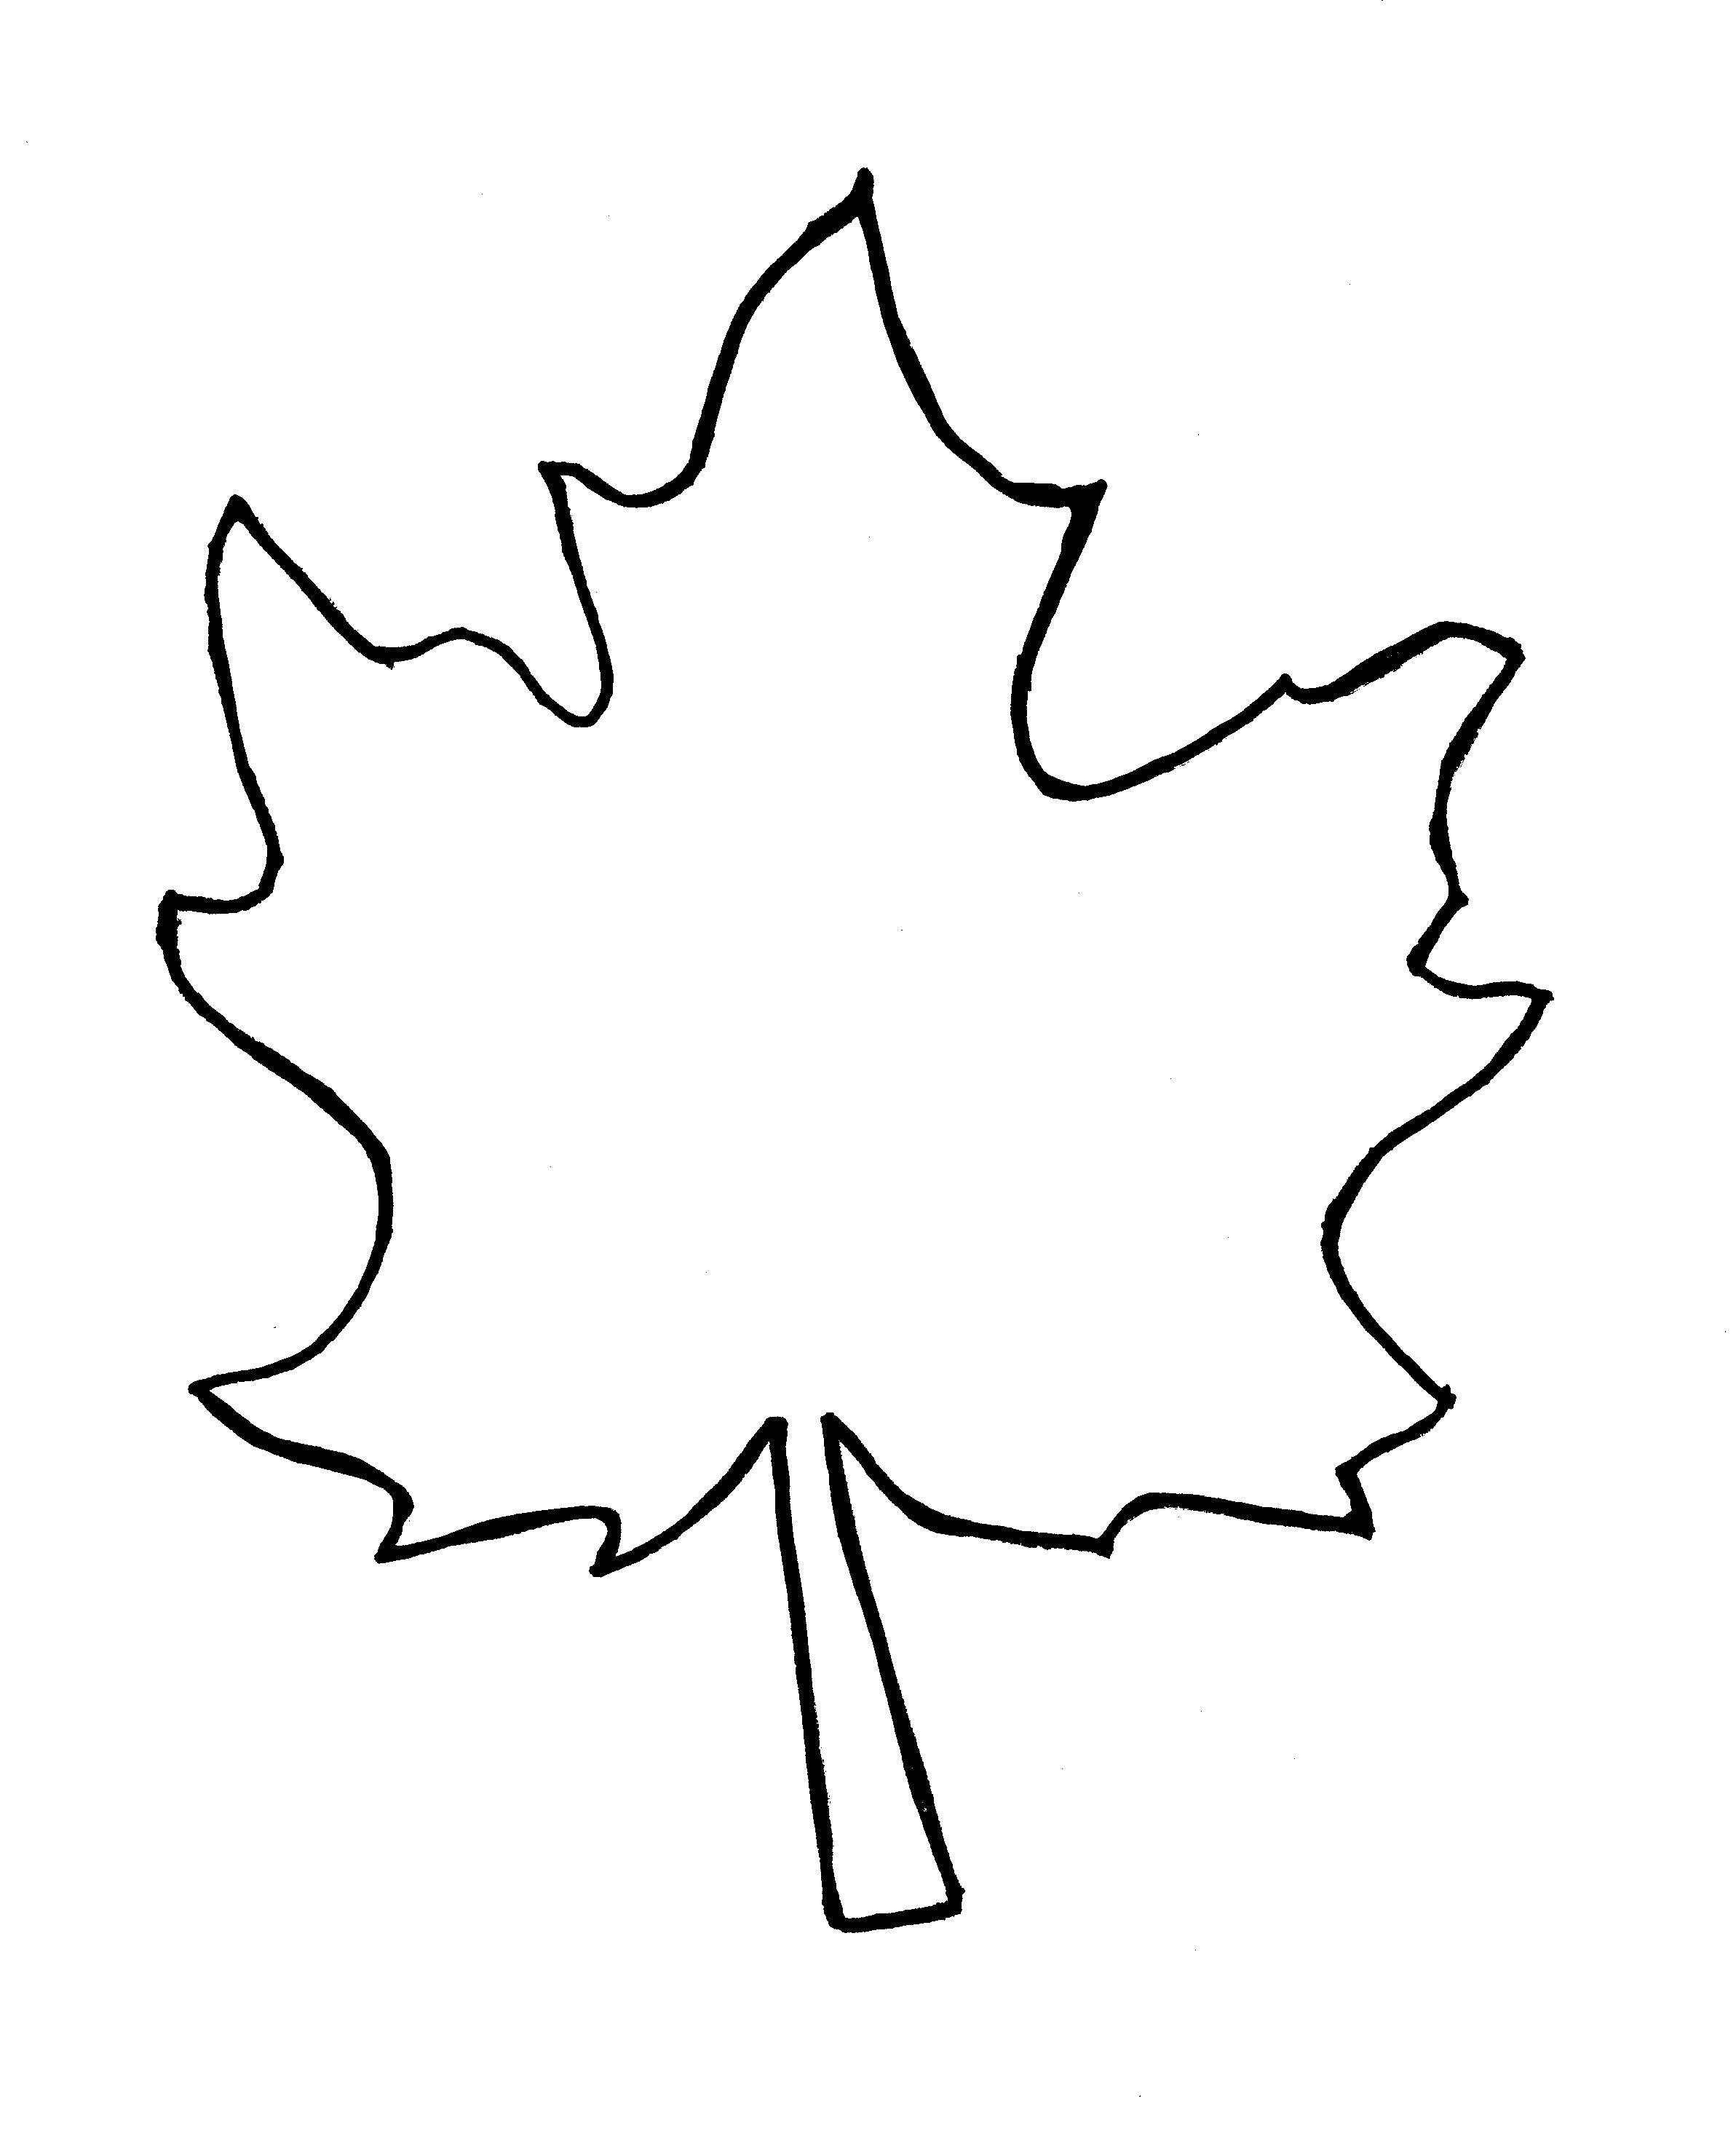 Название: Раскраска Лист  клена. Категория: Контуры листьев деревьев. Теги: лист клена.